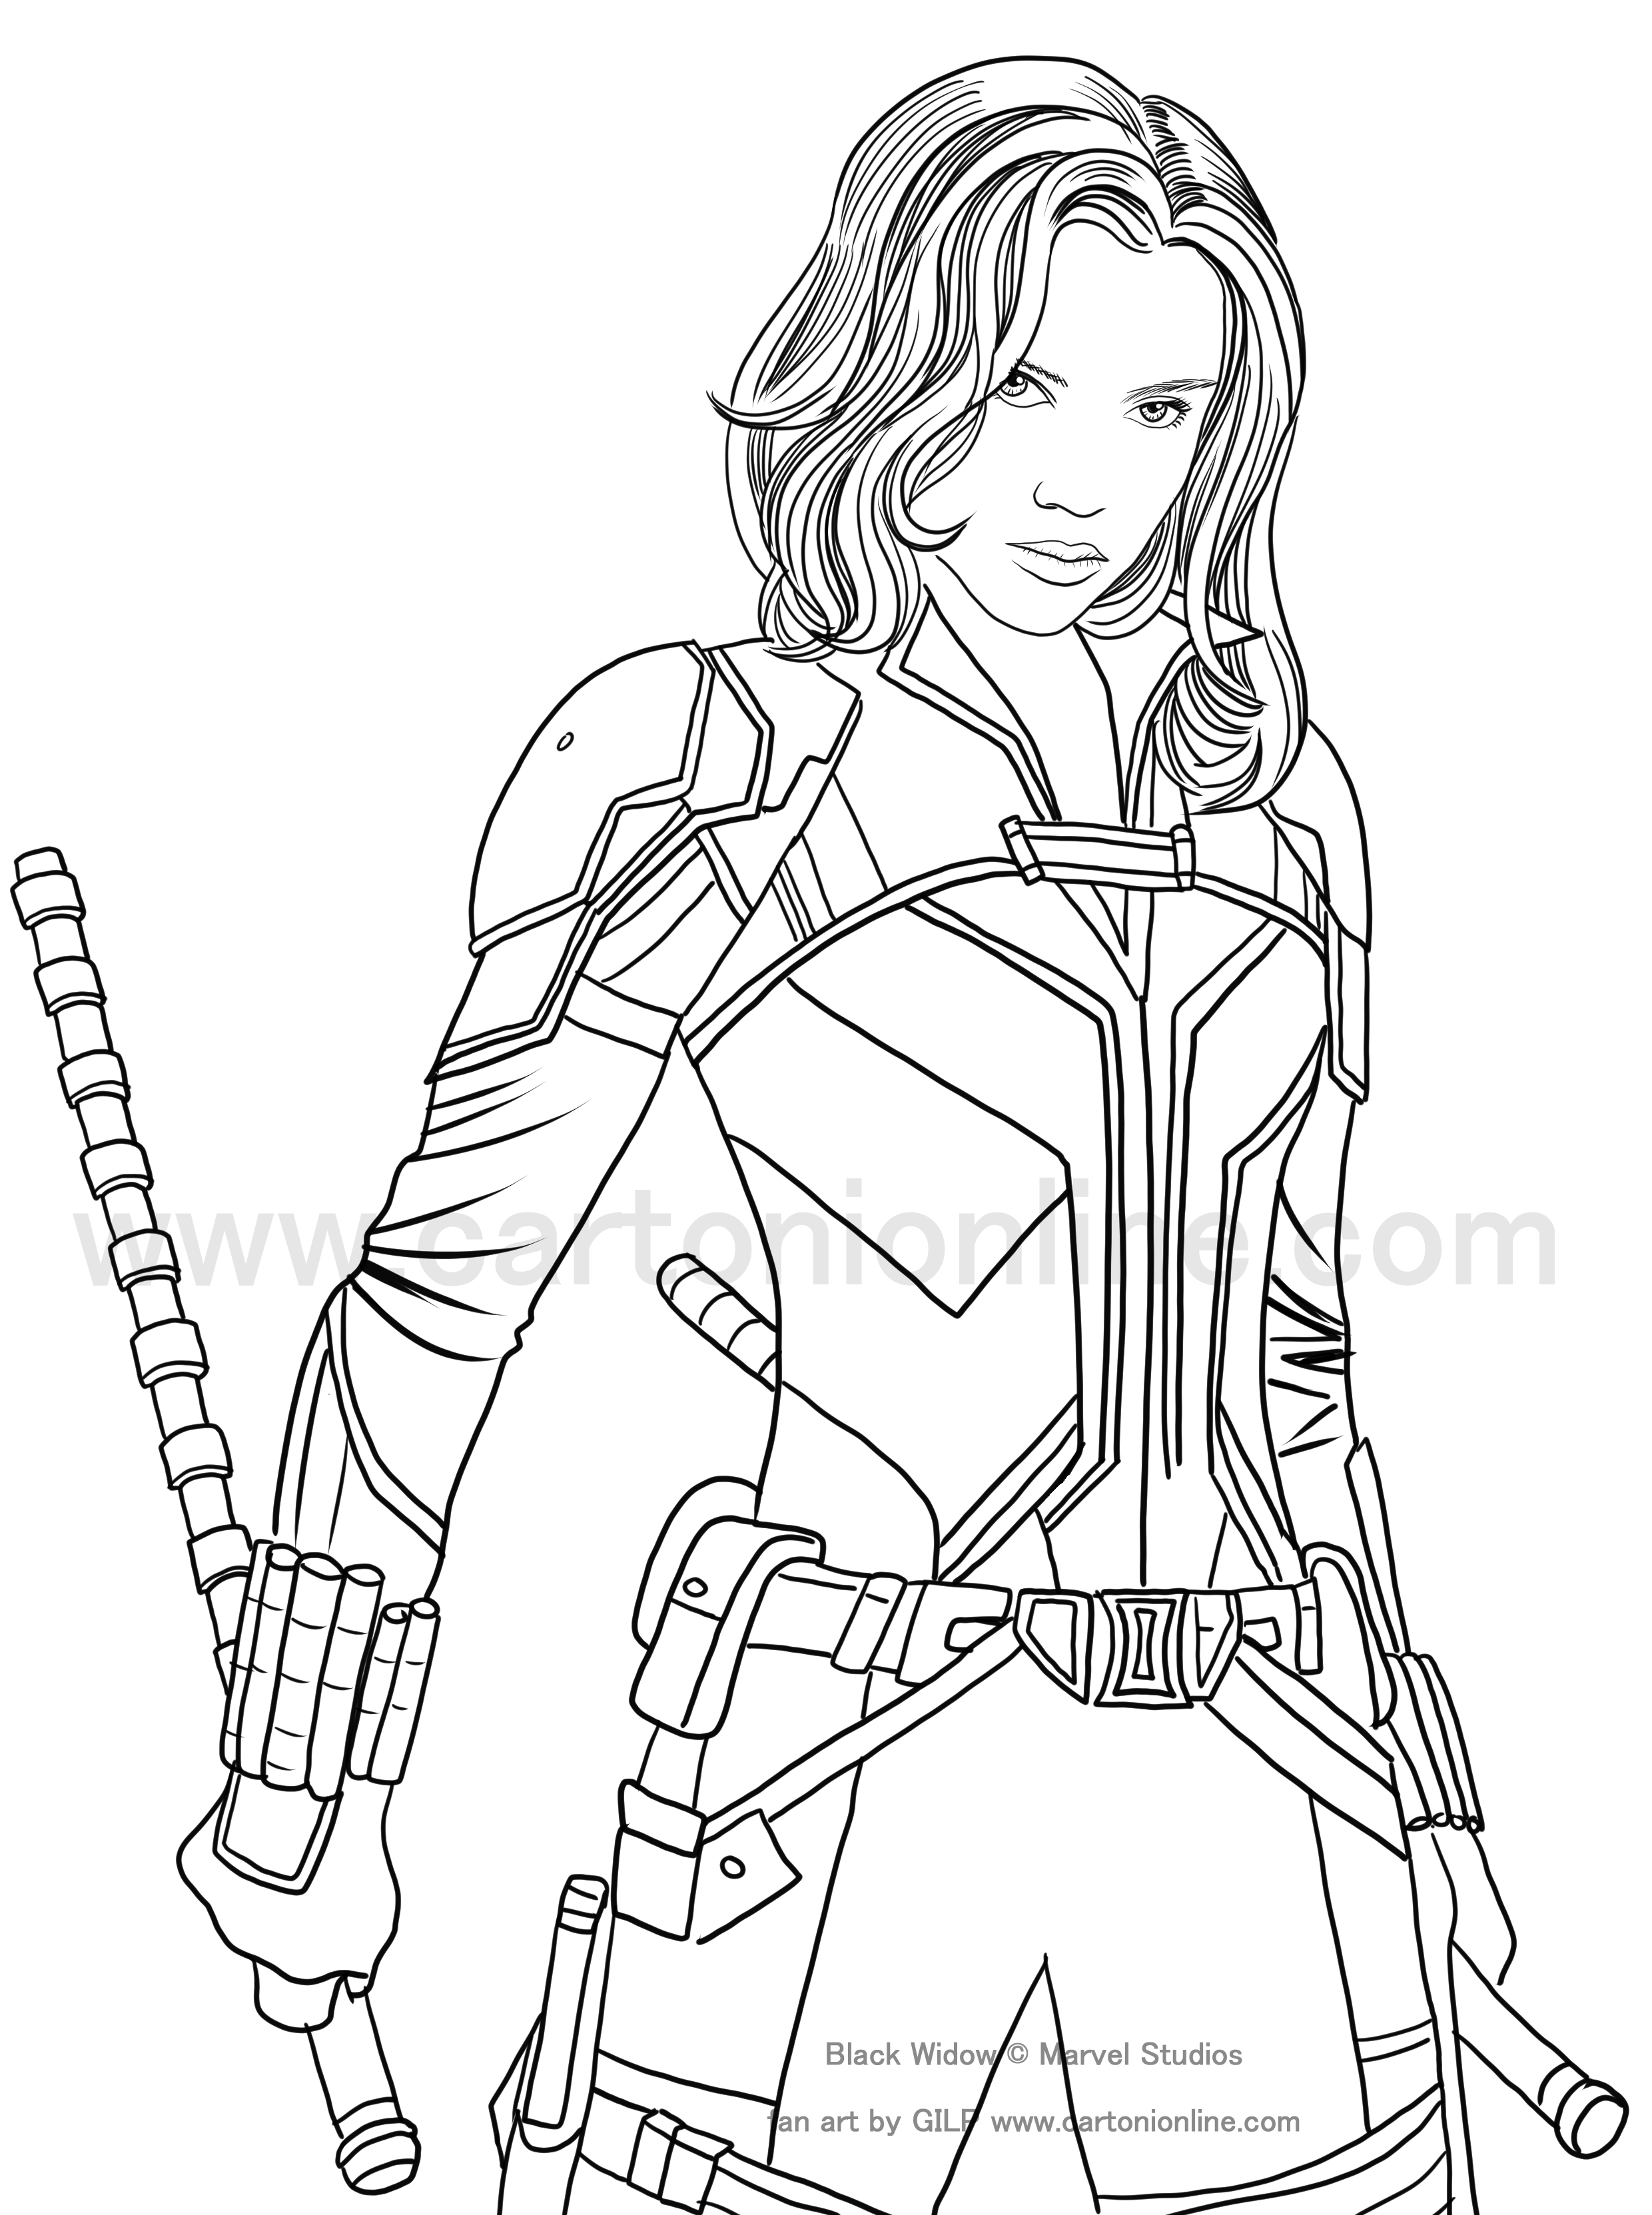 Dibujo de Black Widow (Scarlett Johansson) 02 de Black Widow (película) para imprimir y colorear